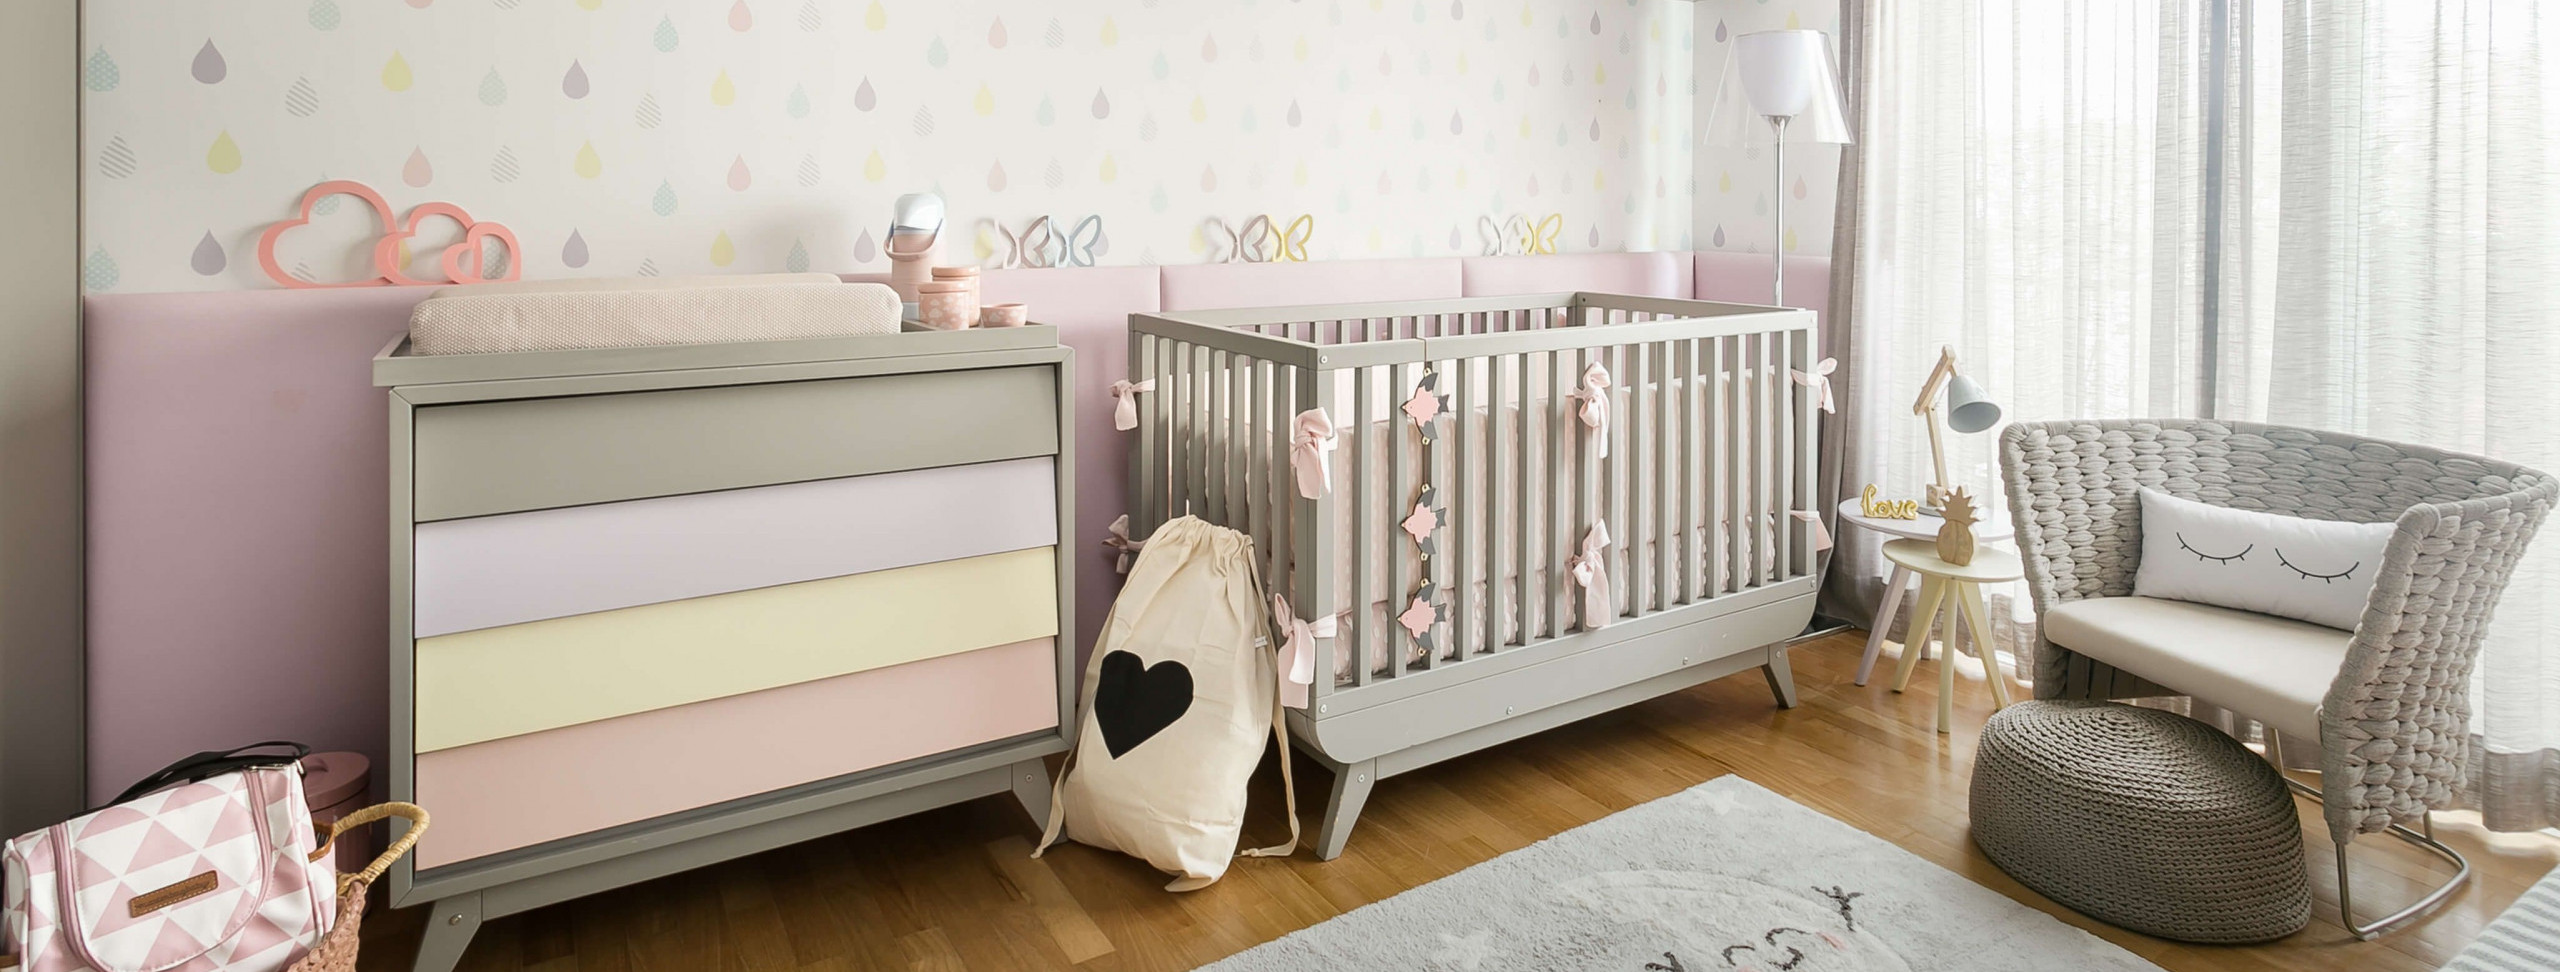 quarto-infantil-parede-revestimento-crianca-berco-decoracao-decor-cor-tapete-almofadas-cortina-brinquedos-ludico